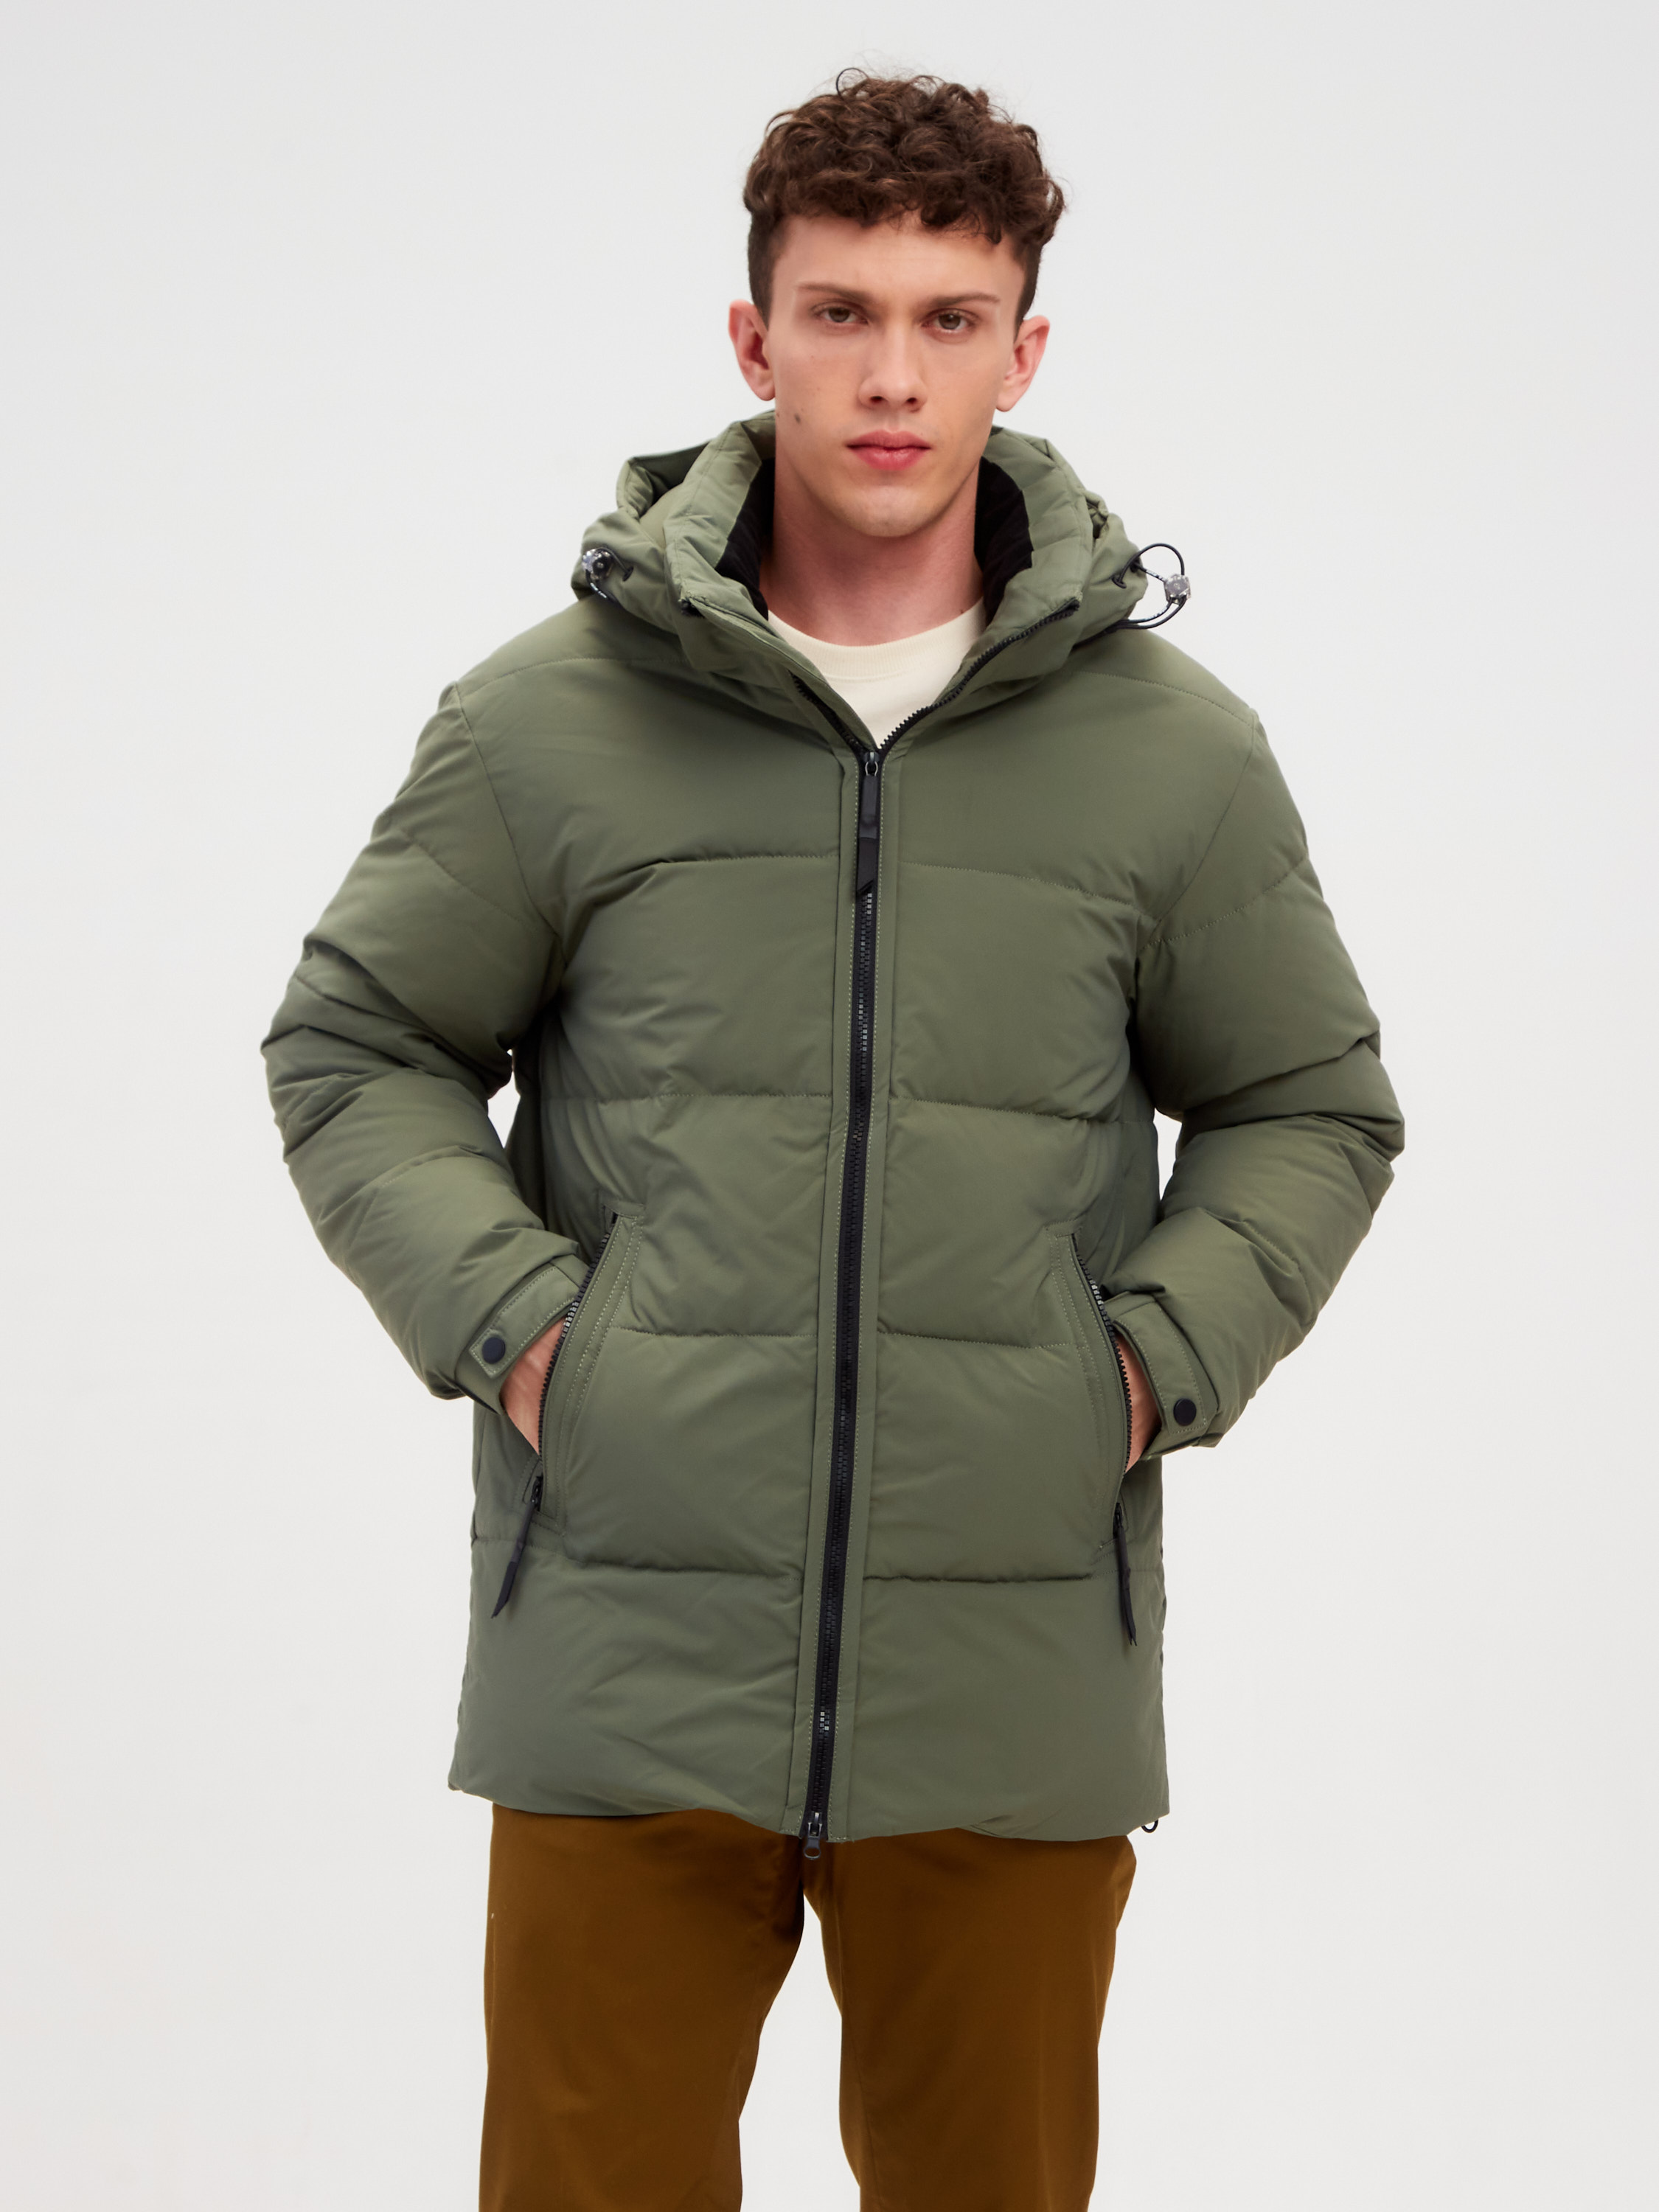 Зимняя куртка мужская GRIZMAN 64397 зеленая 46 RU